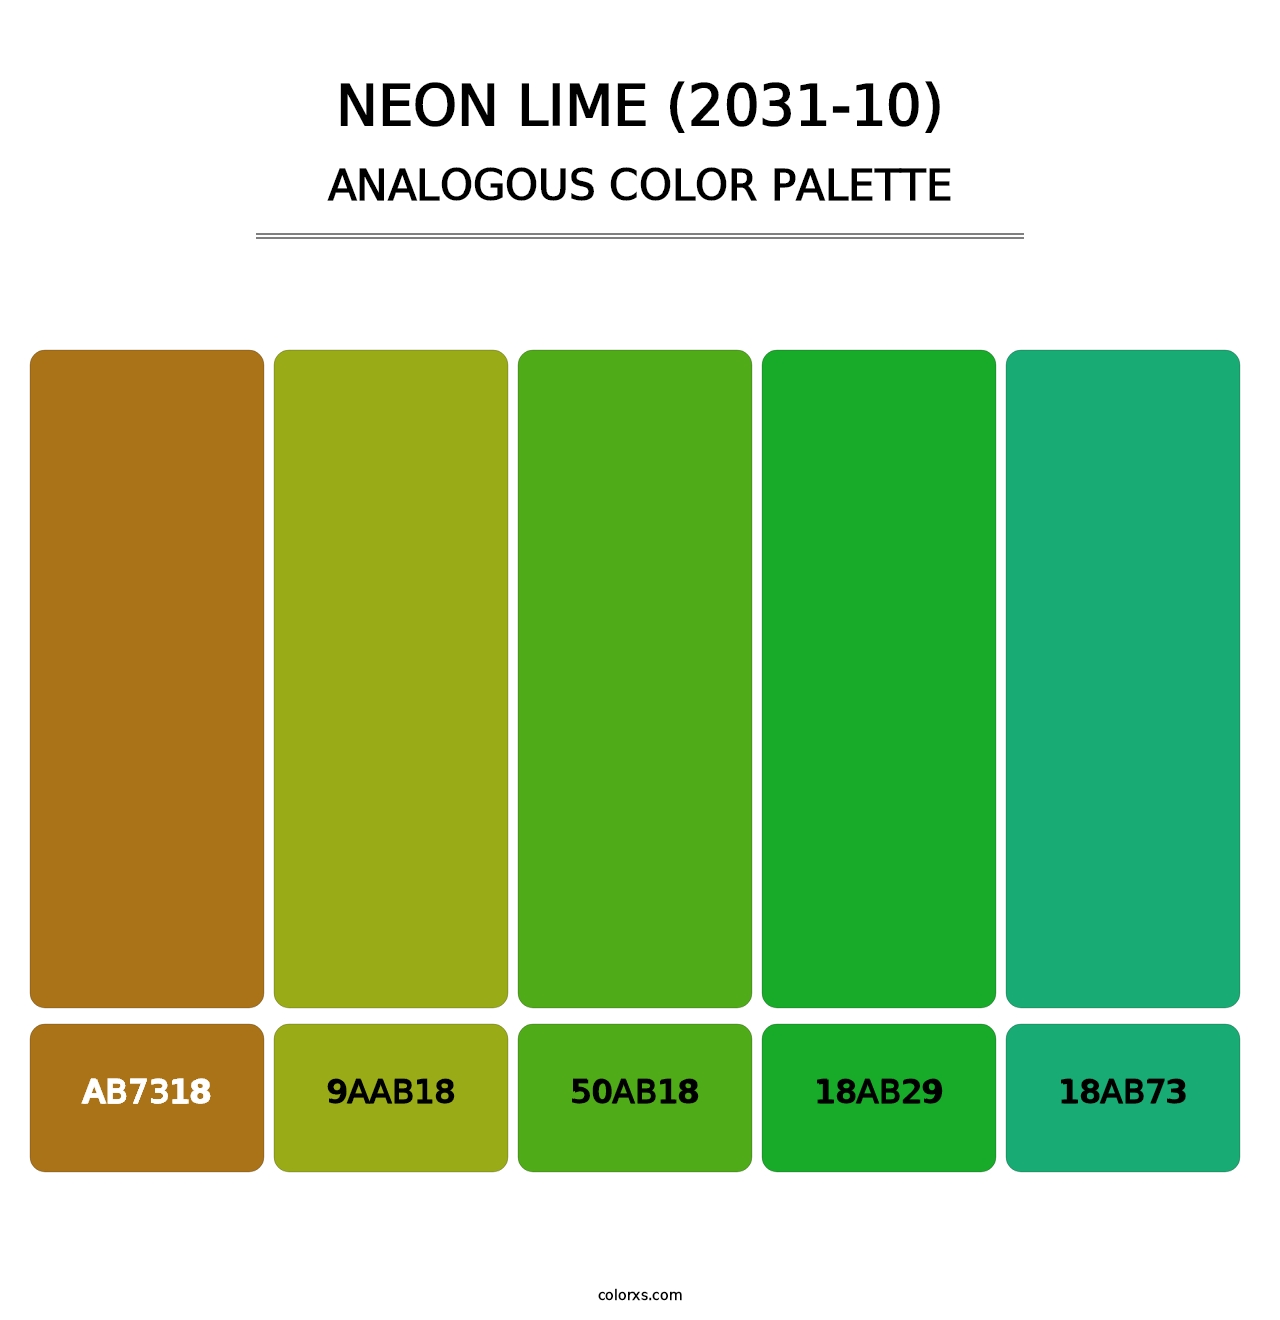 Neon Lime (2031-10) - Analogous Color Palette